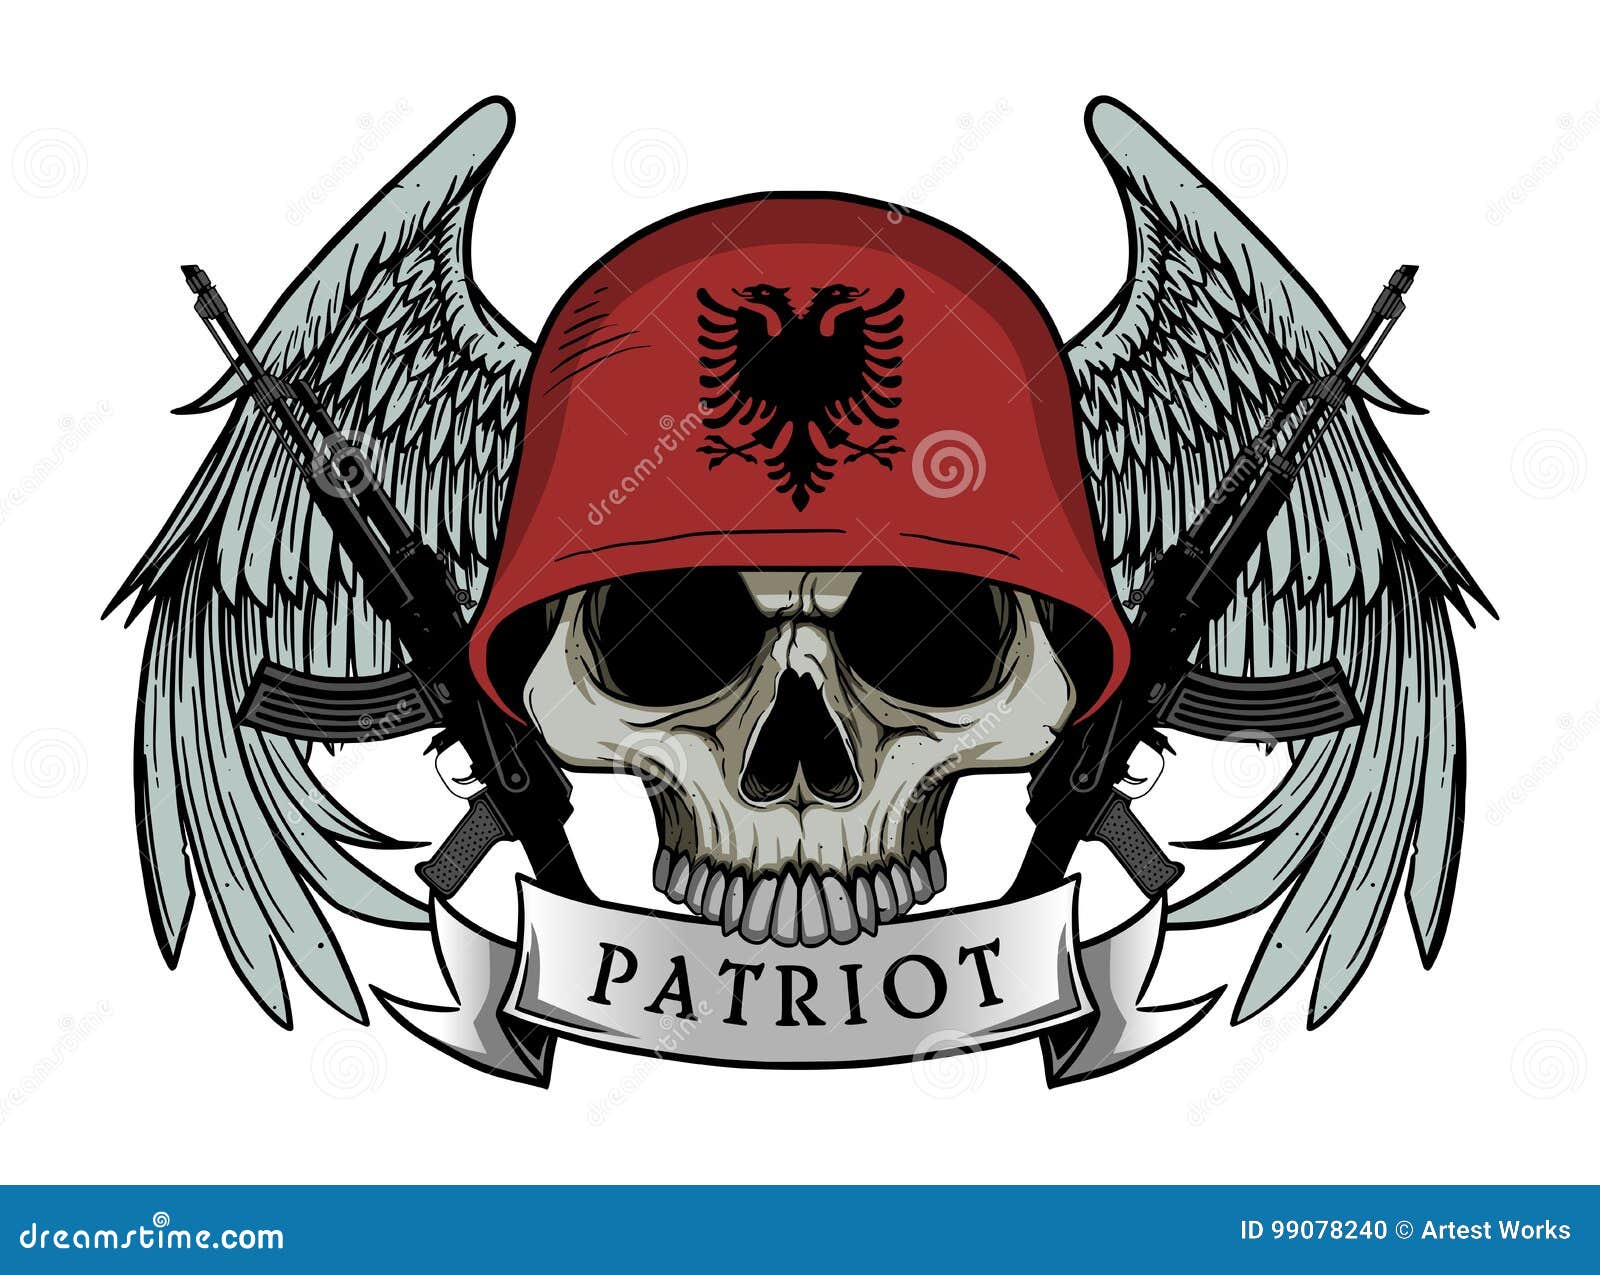 Militarschadel Oder Patriotschadel Mit Albanien Flagge Sturzhelm Vektor Abbildung Illustration Von Markierungsfahne Abbildung 99078240